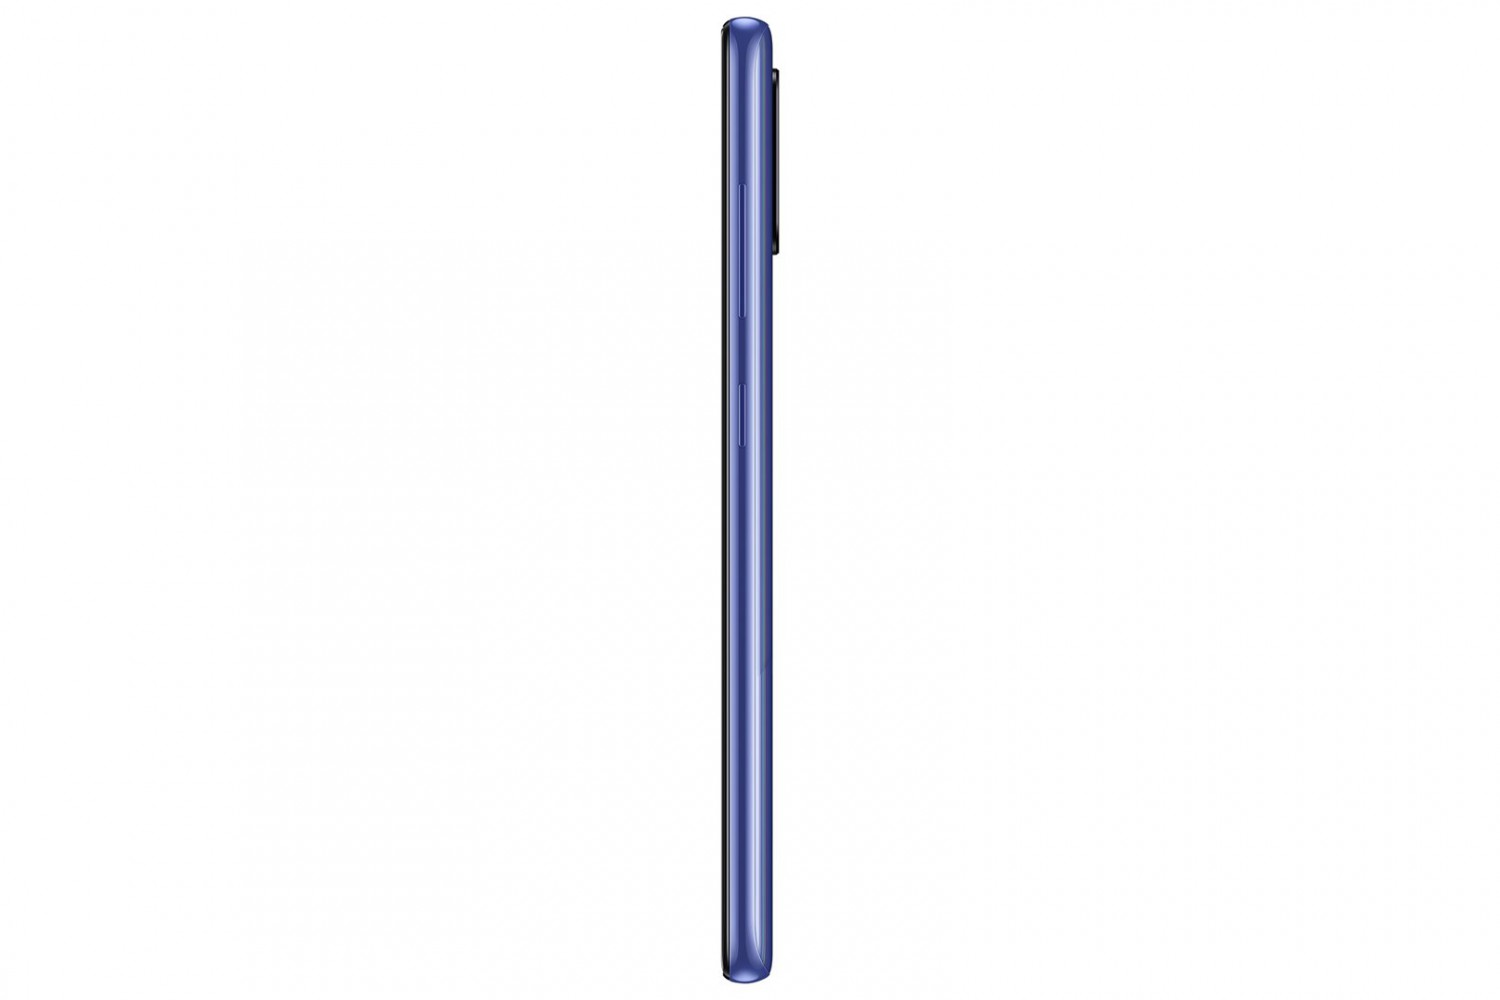 Samsung Galaxy A41 SM-A415F 4GB/64GB modrá